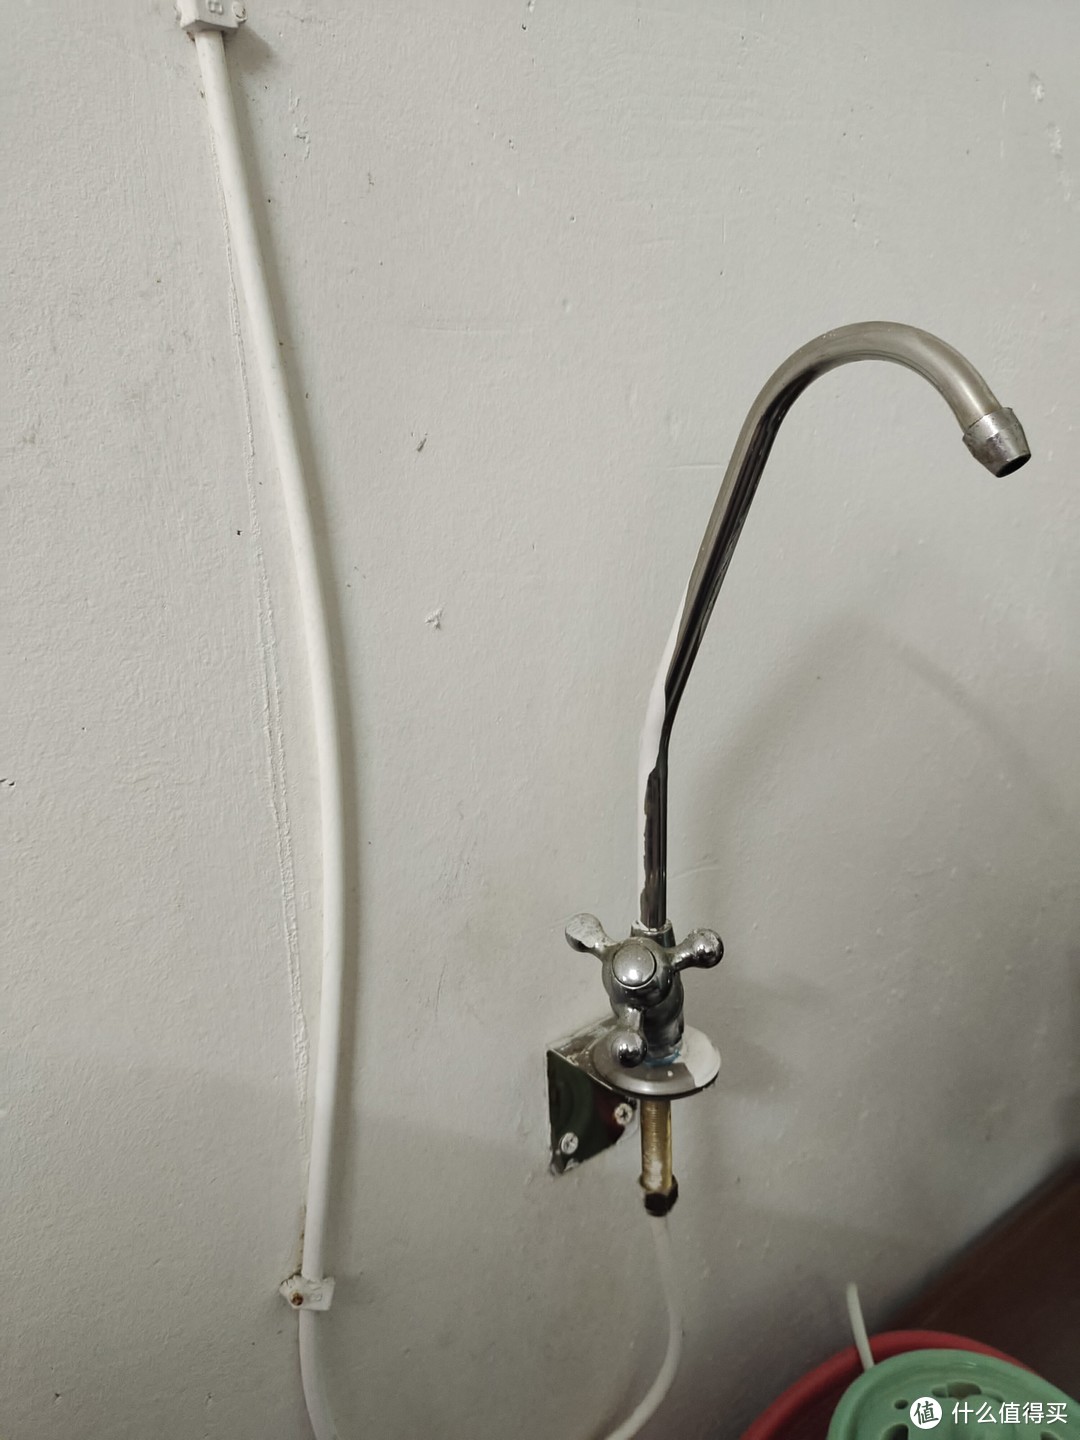 随时随地都可以装备得净水器，让家人喝上纯净的水！